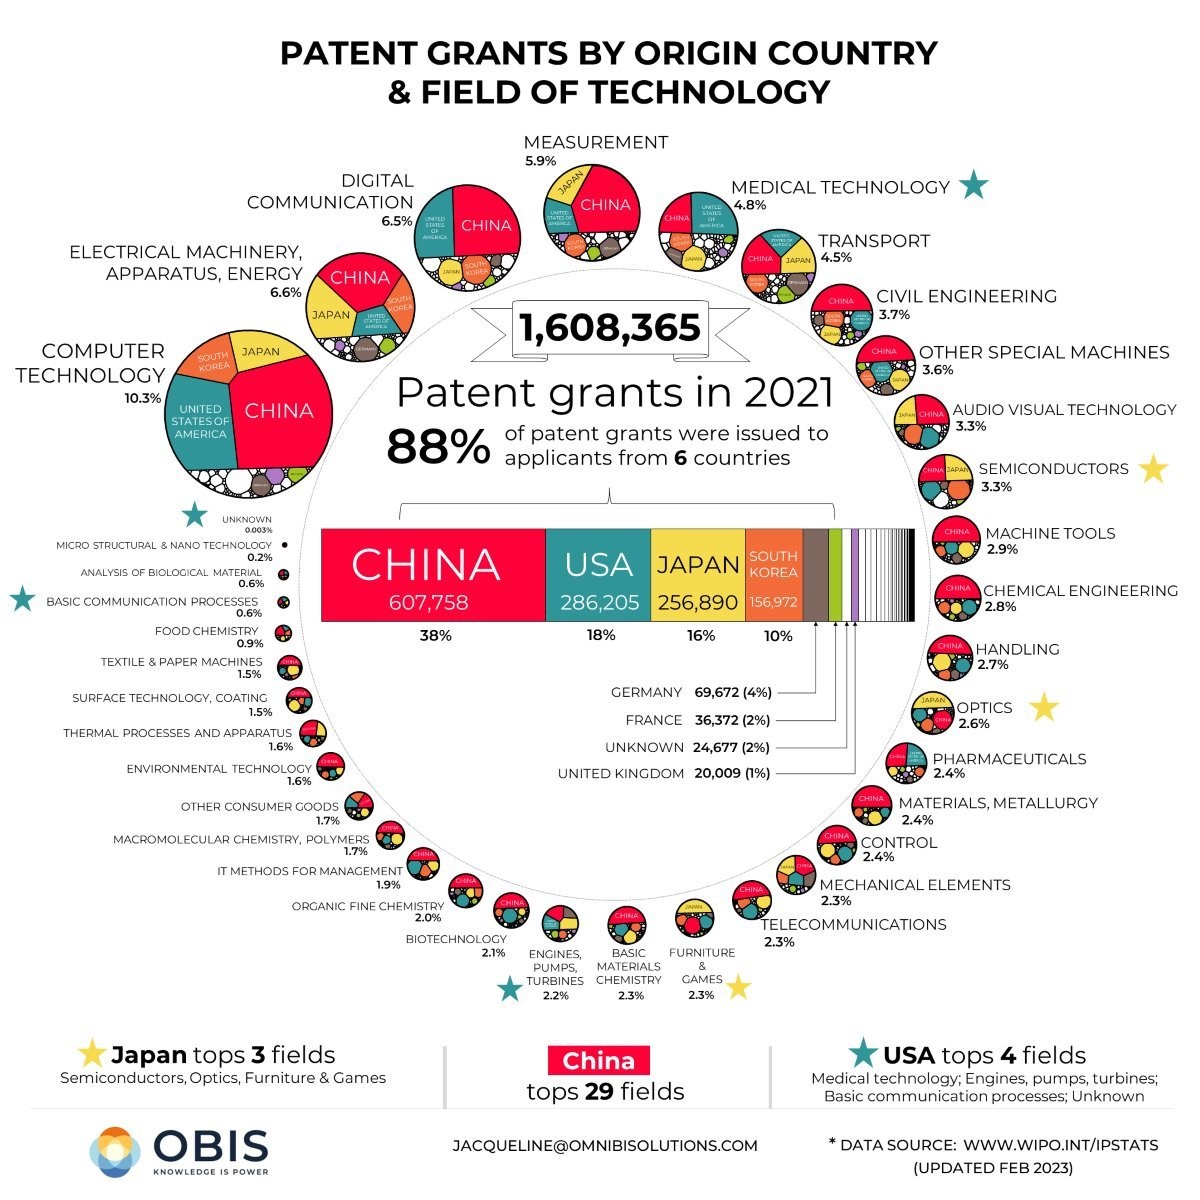 세계 기술 특허 80%를 독점한 4개 국가